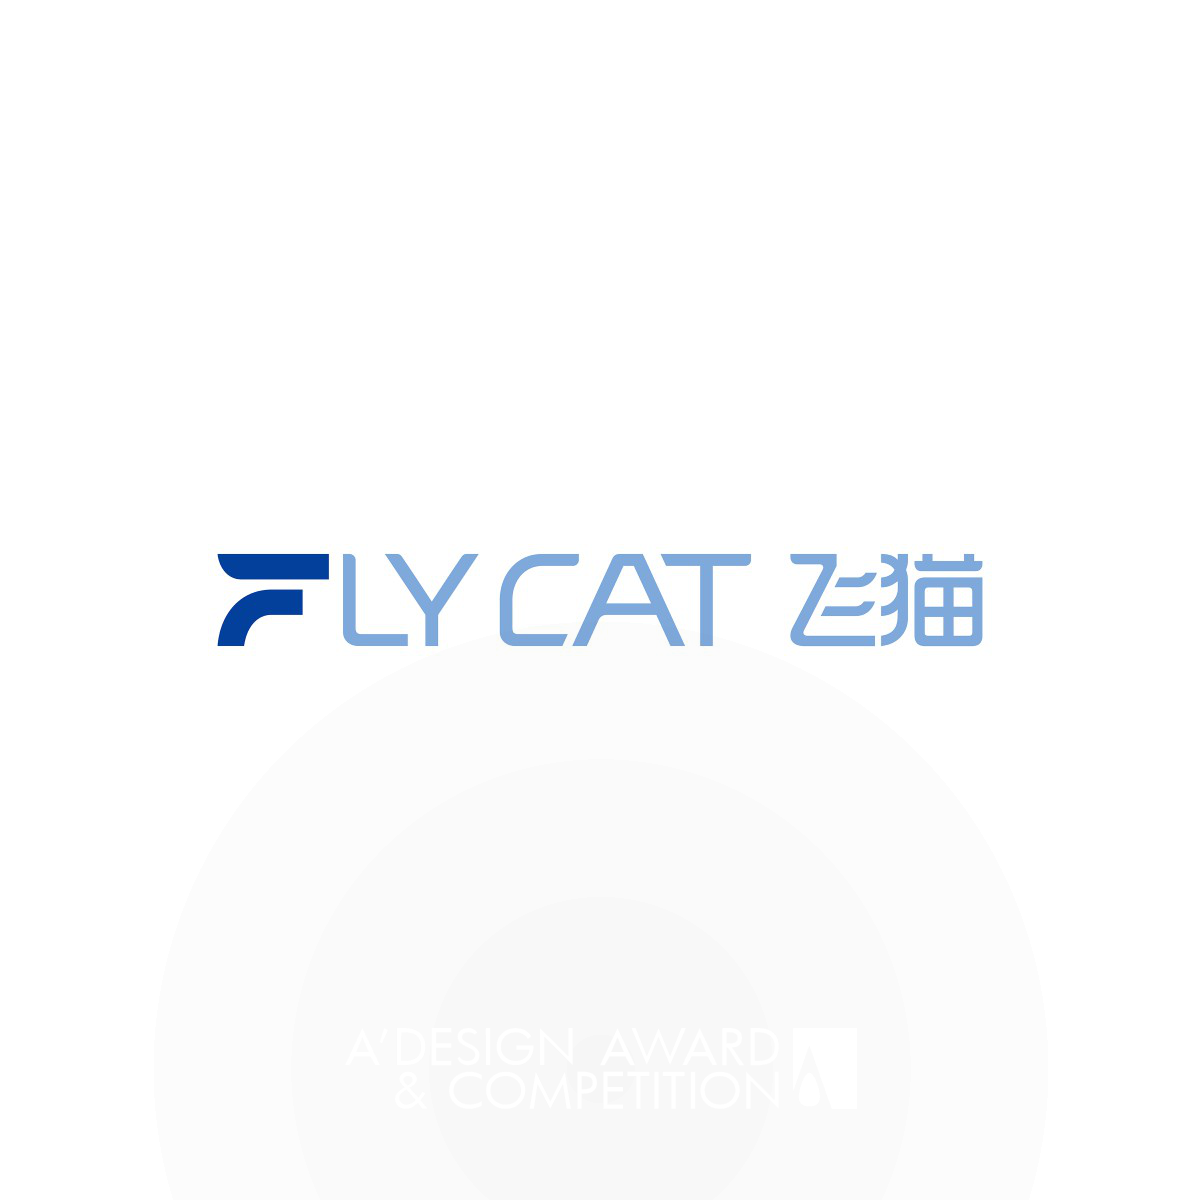 Flycat Brand Identity by Wei Sun